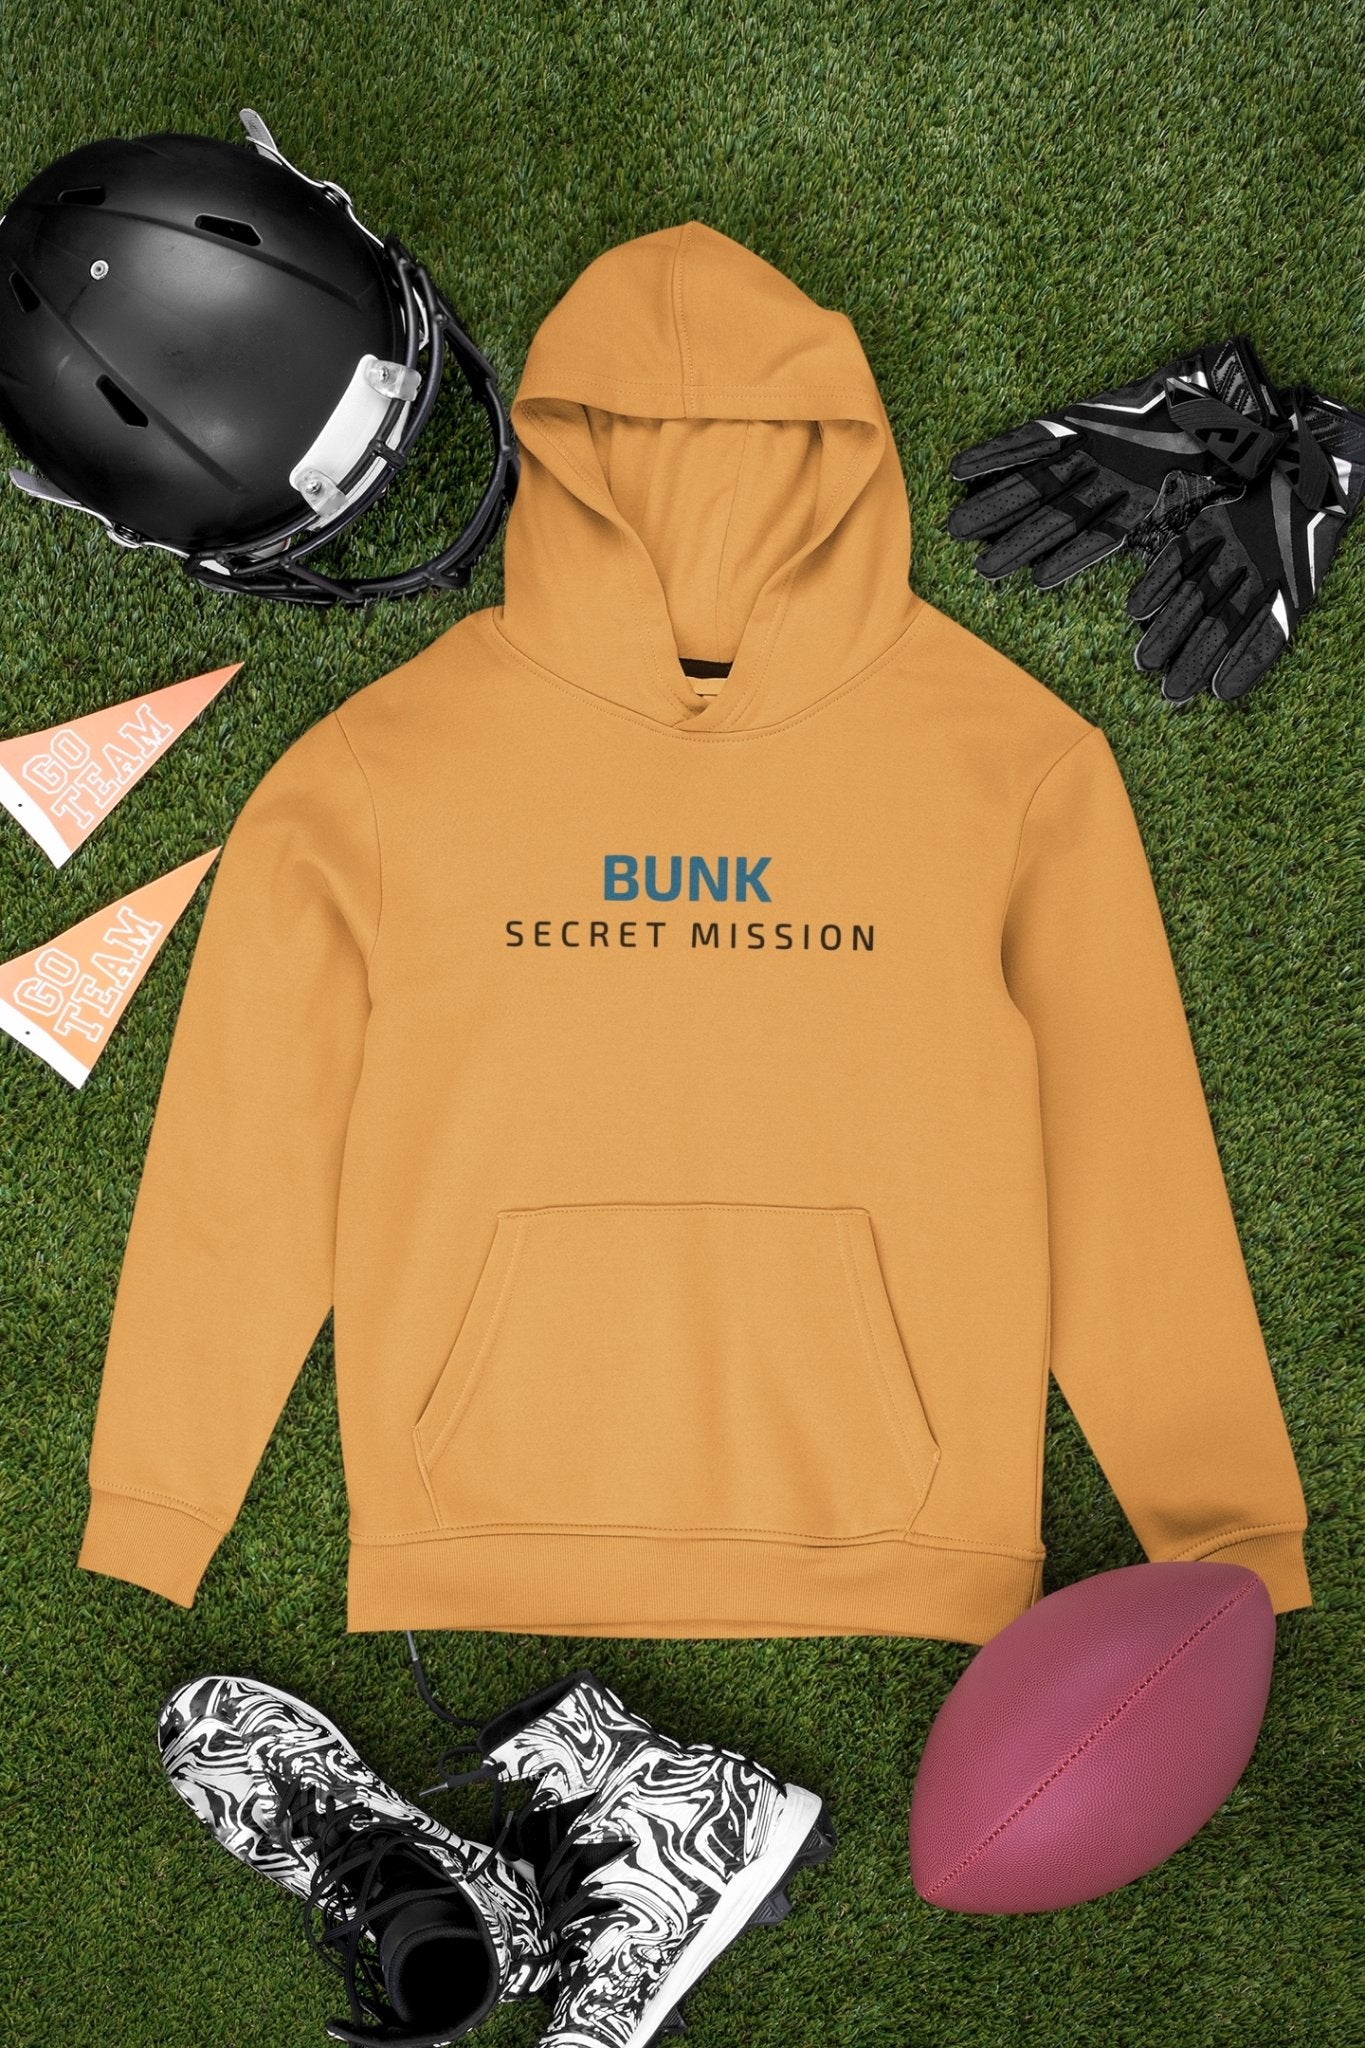 Bunk Secret Mission Typography Men Hoodies-FunkyTeesClub - Funky Tees Club